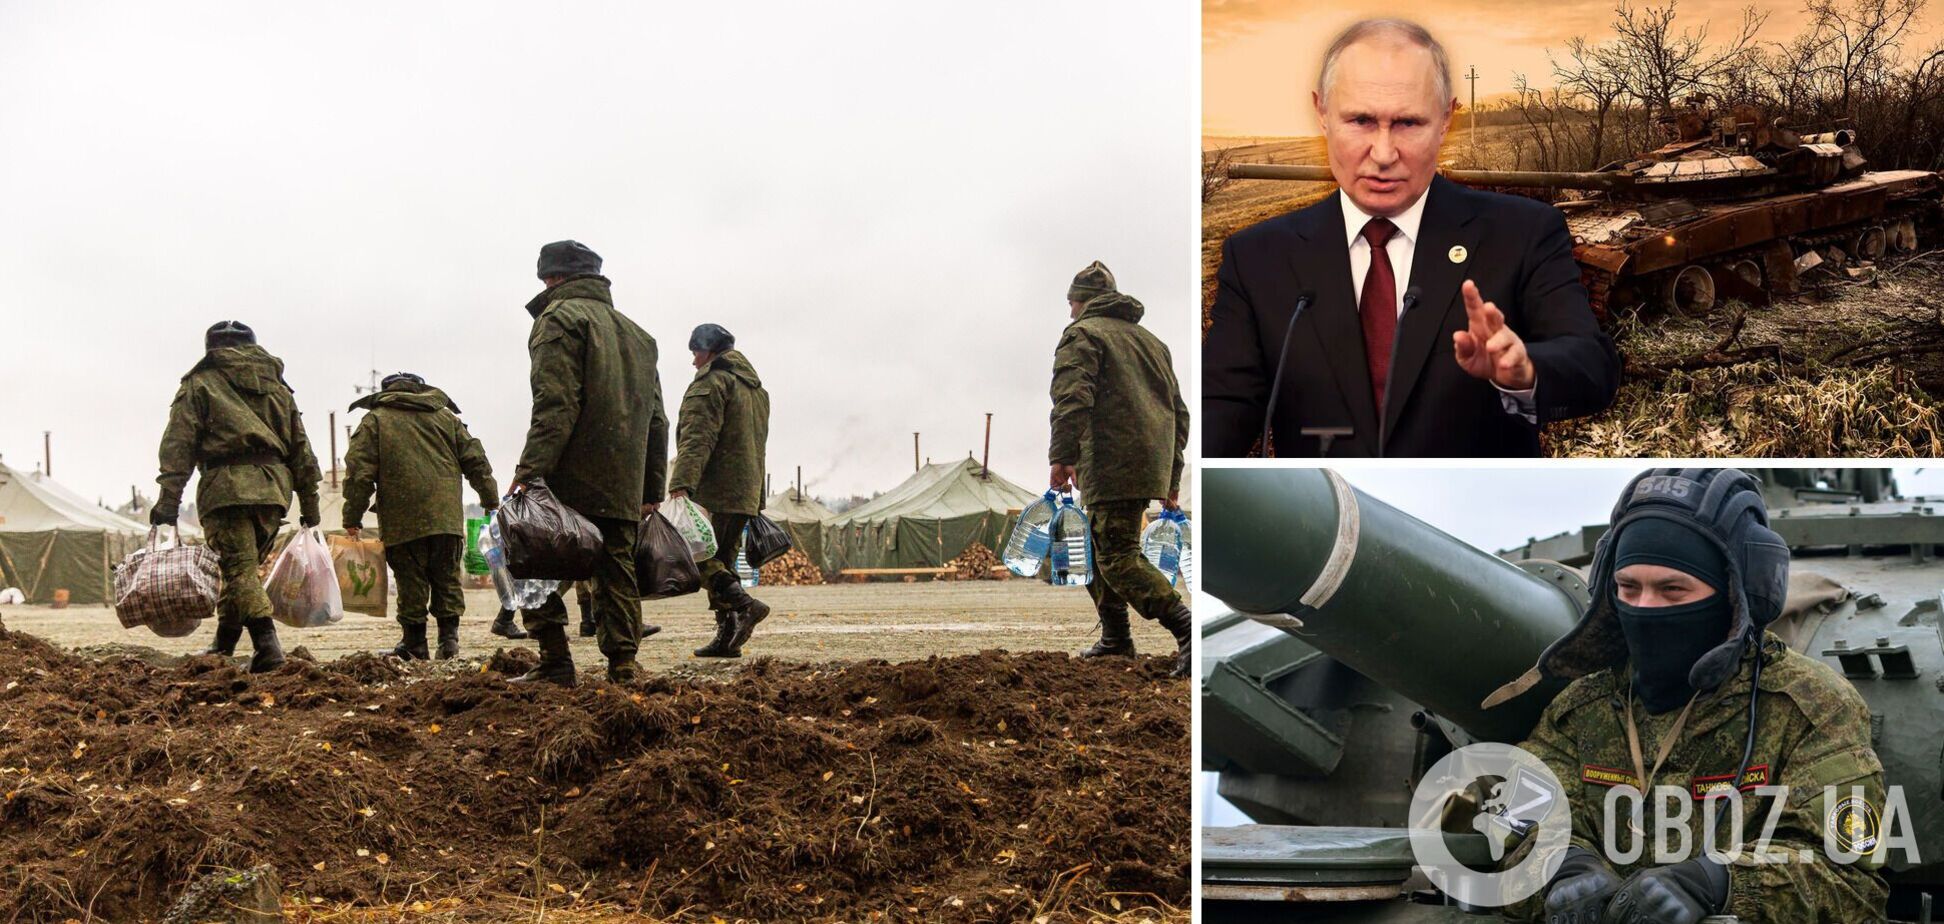 Путин готовит РФ к масштабной войне до последнего россиянина, – эксперт